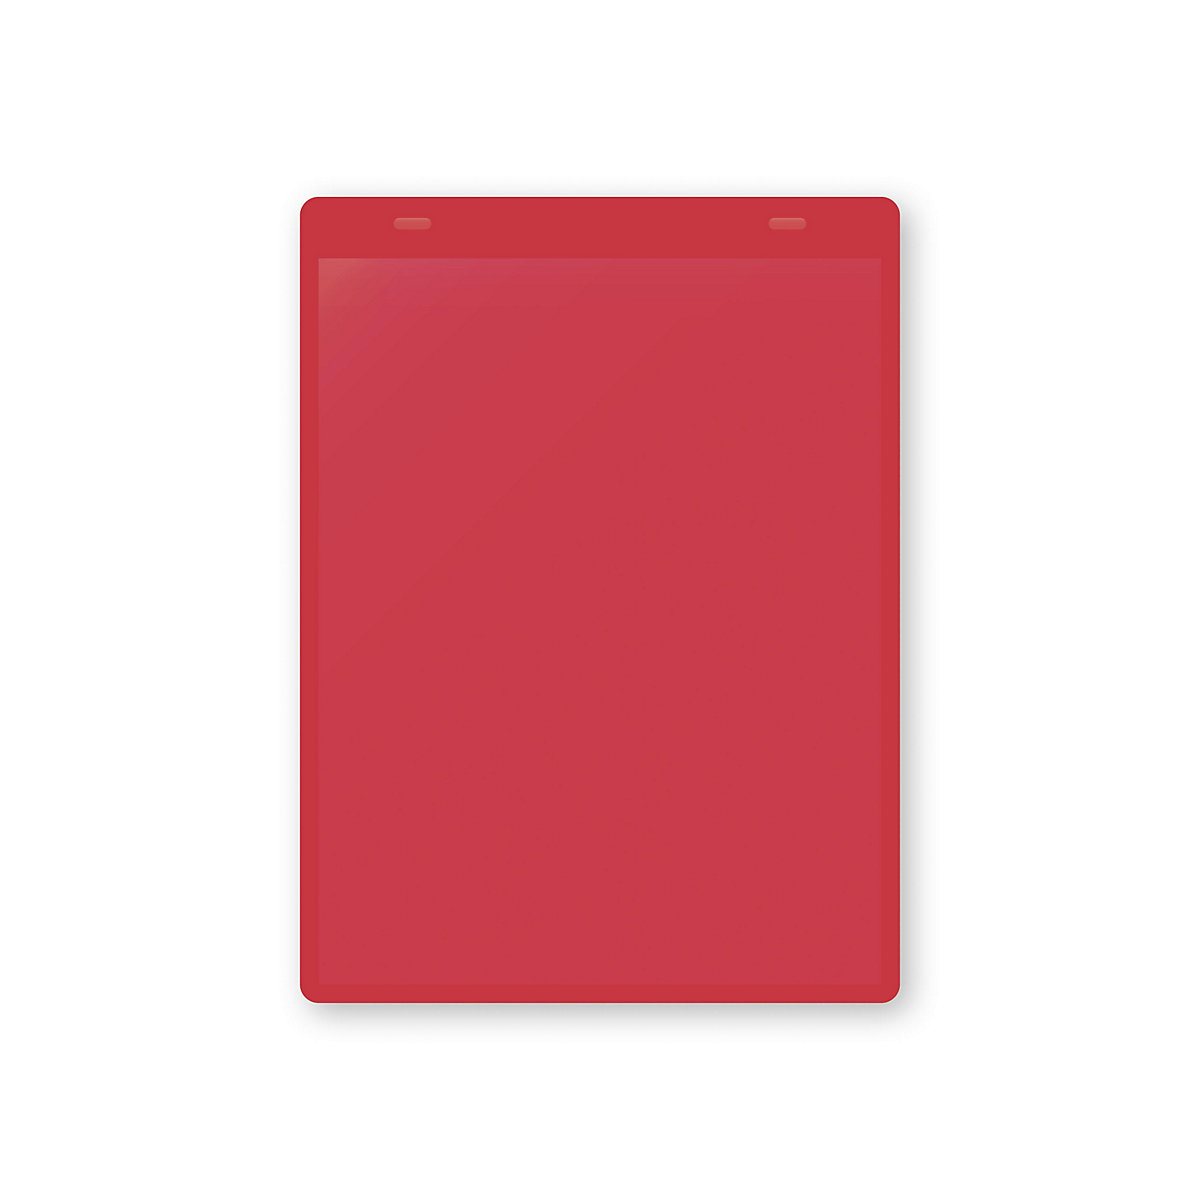 Öntapadó dokumentumtartó tasakok, DIN A5, álló, cs. e. 50 db, piros